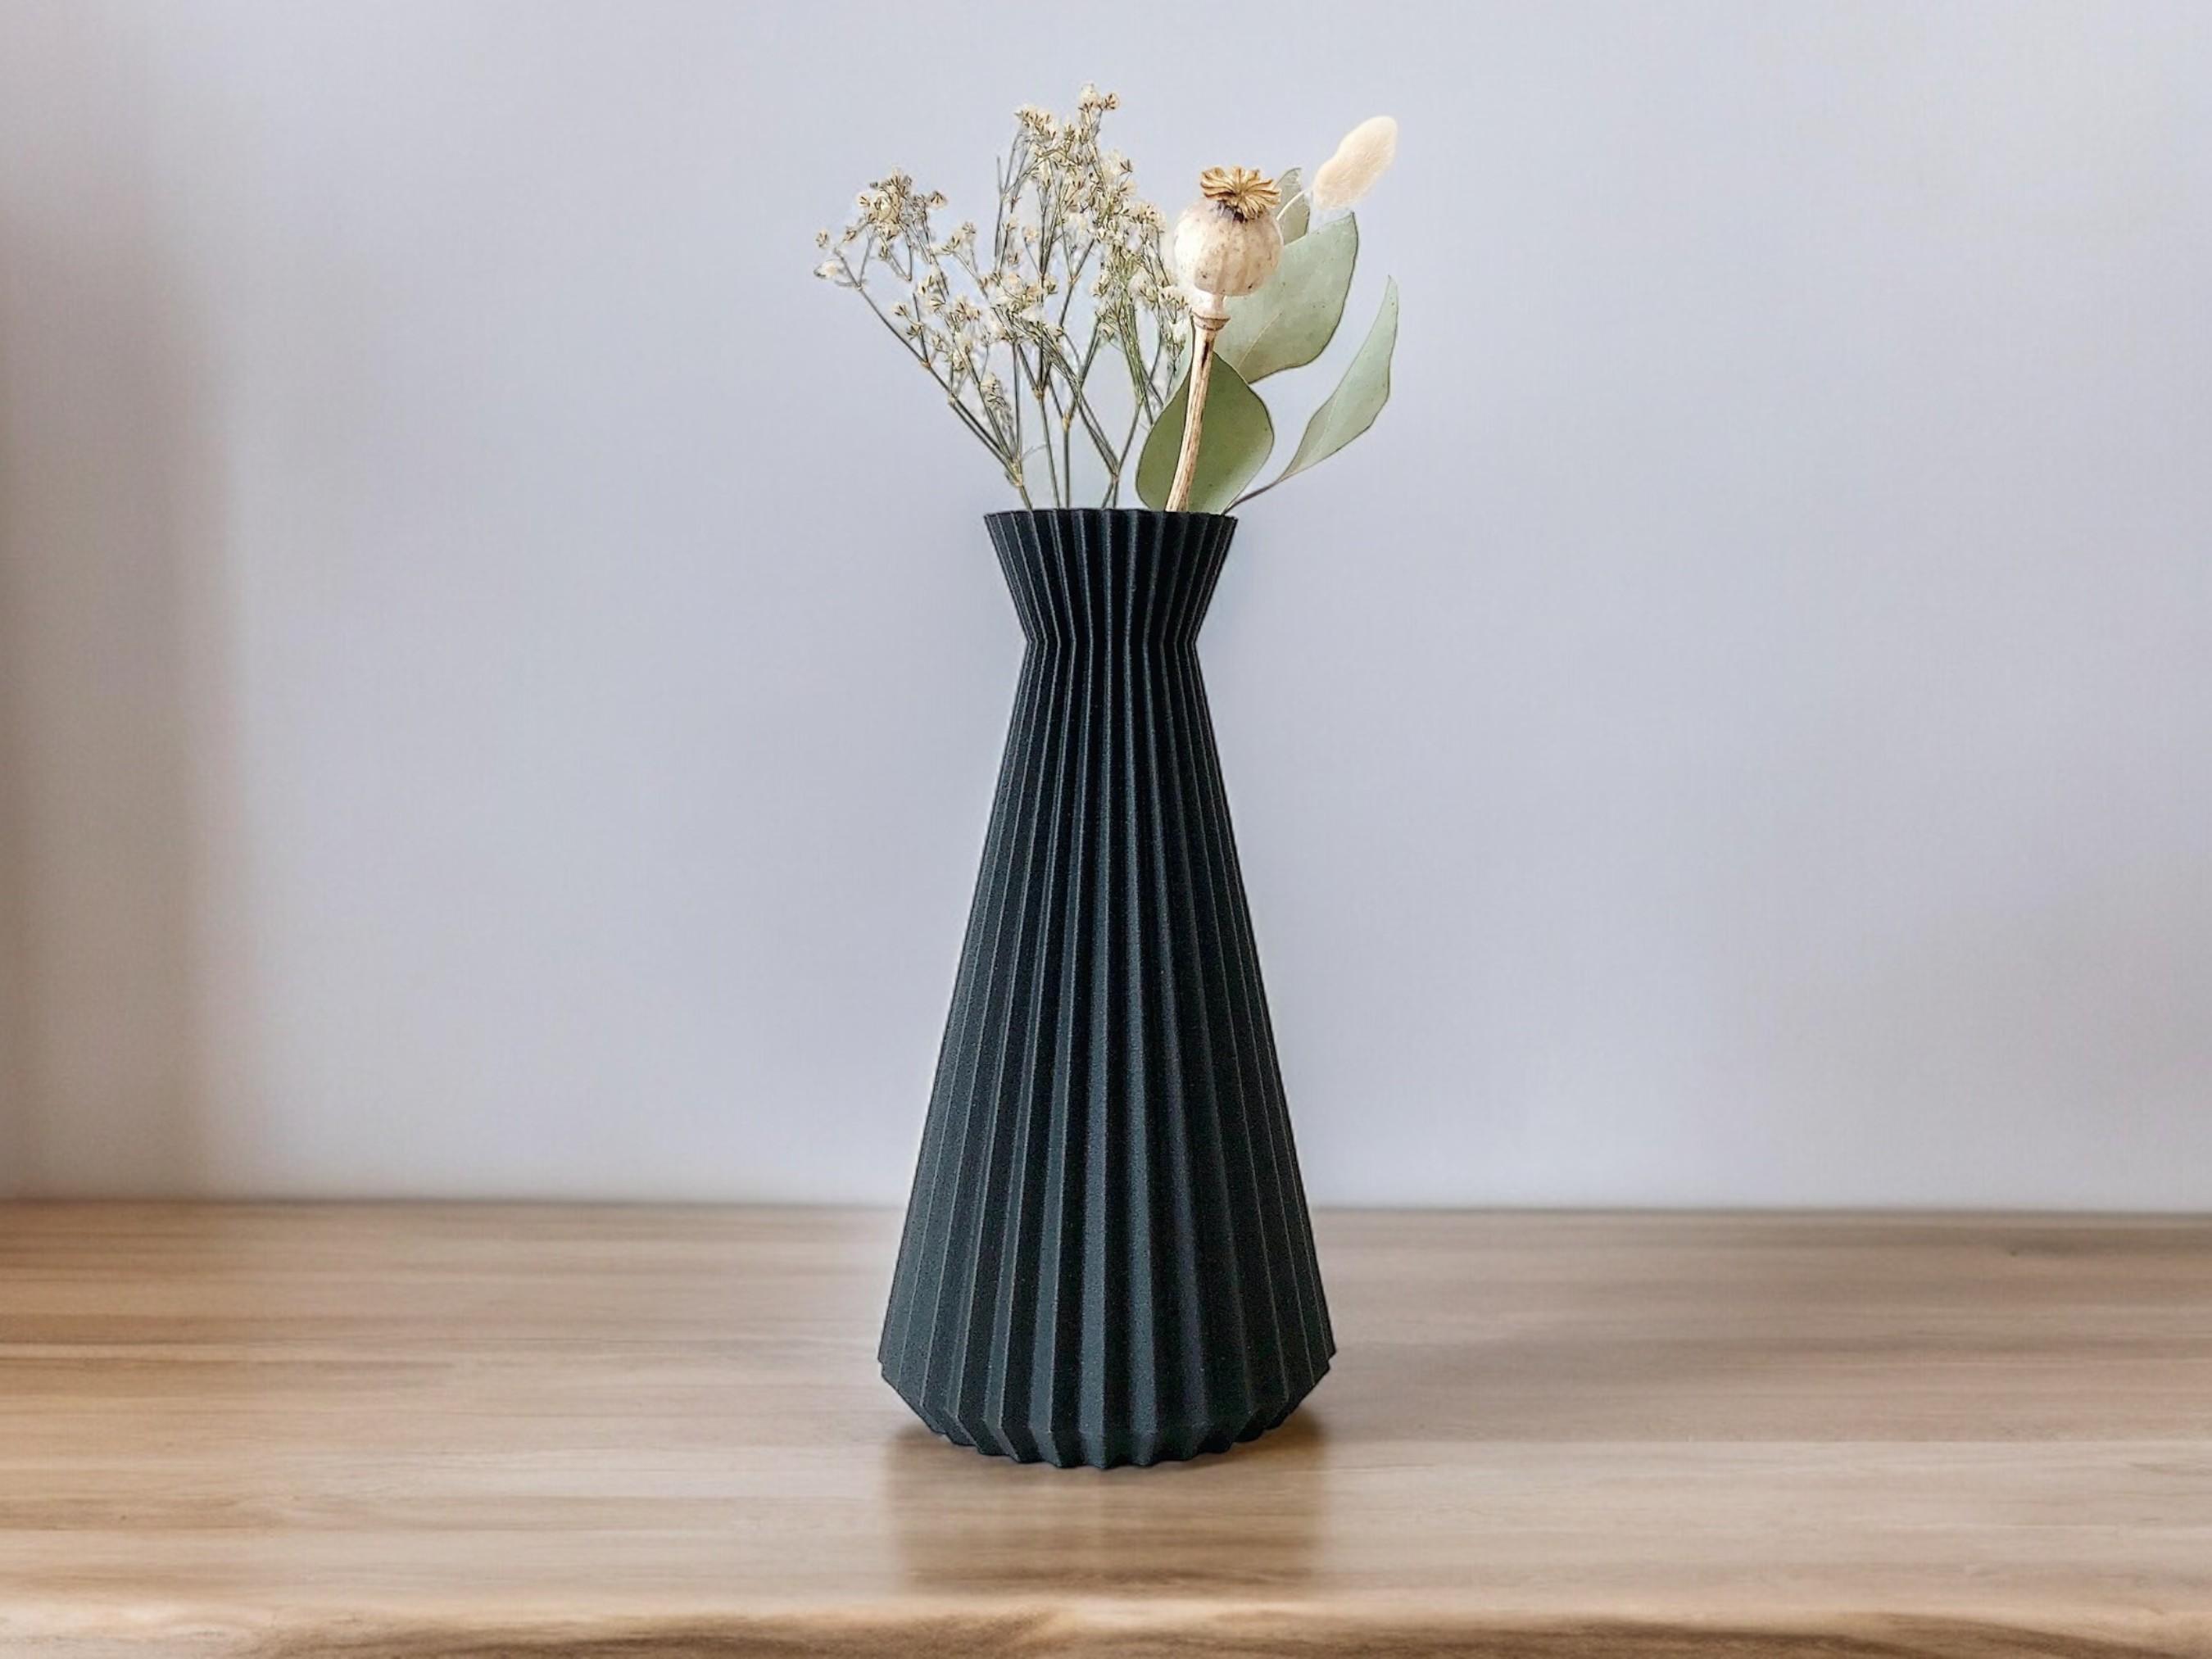 The Megaphone - A Botany Chic Vase 3d model